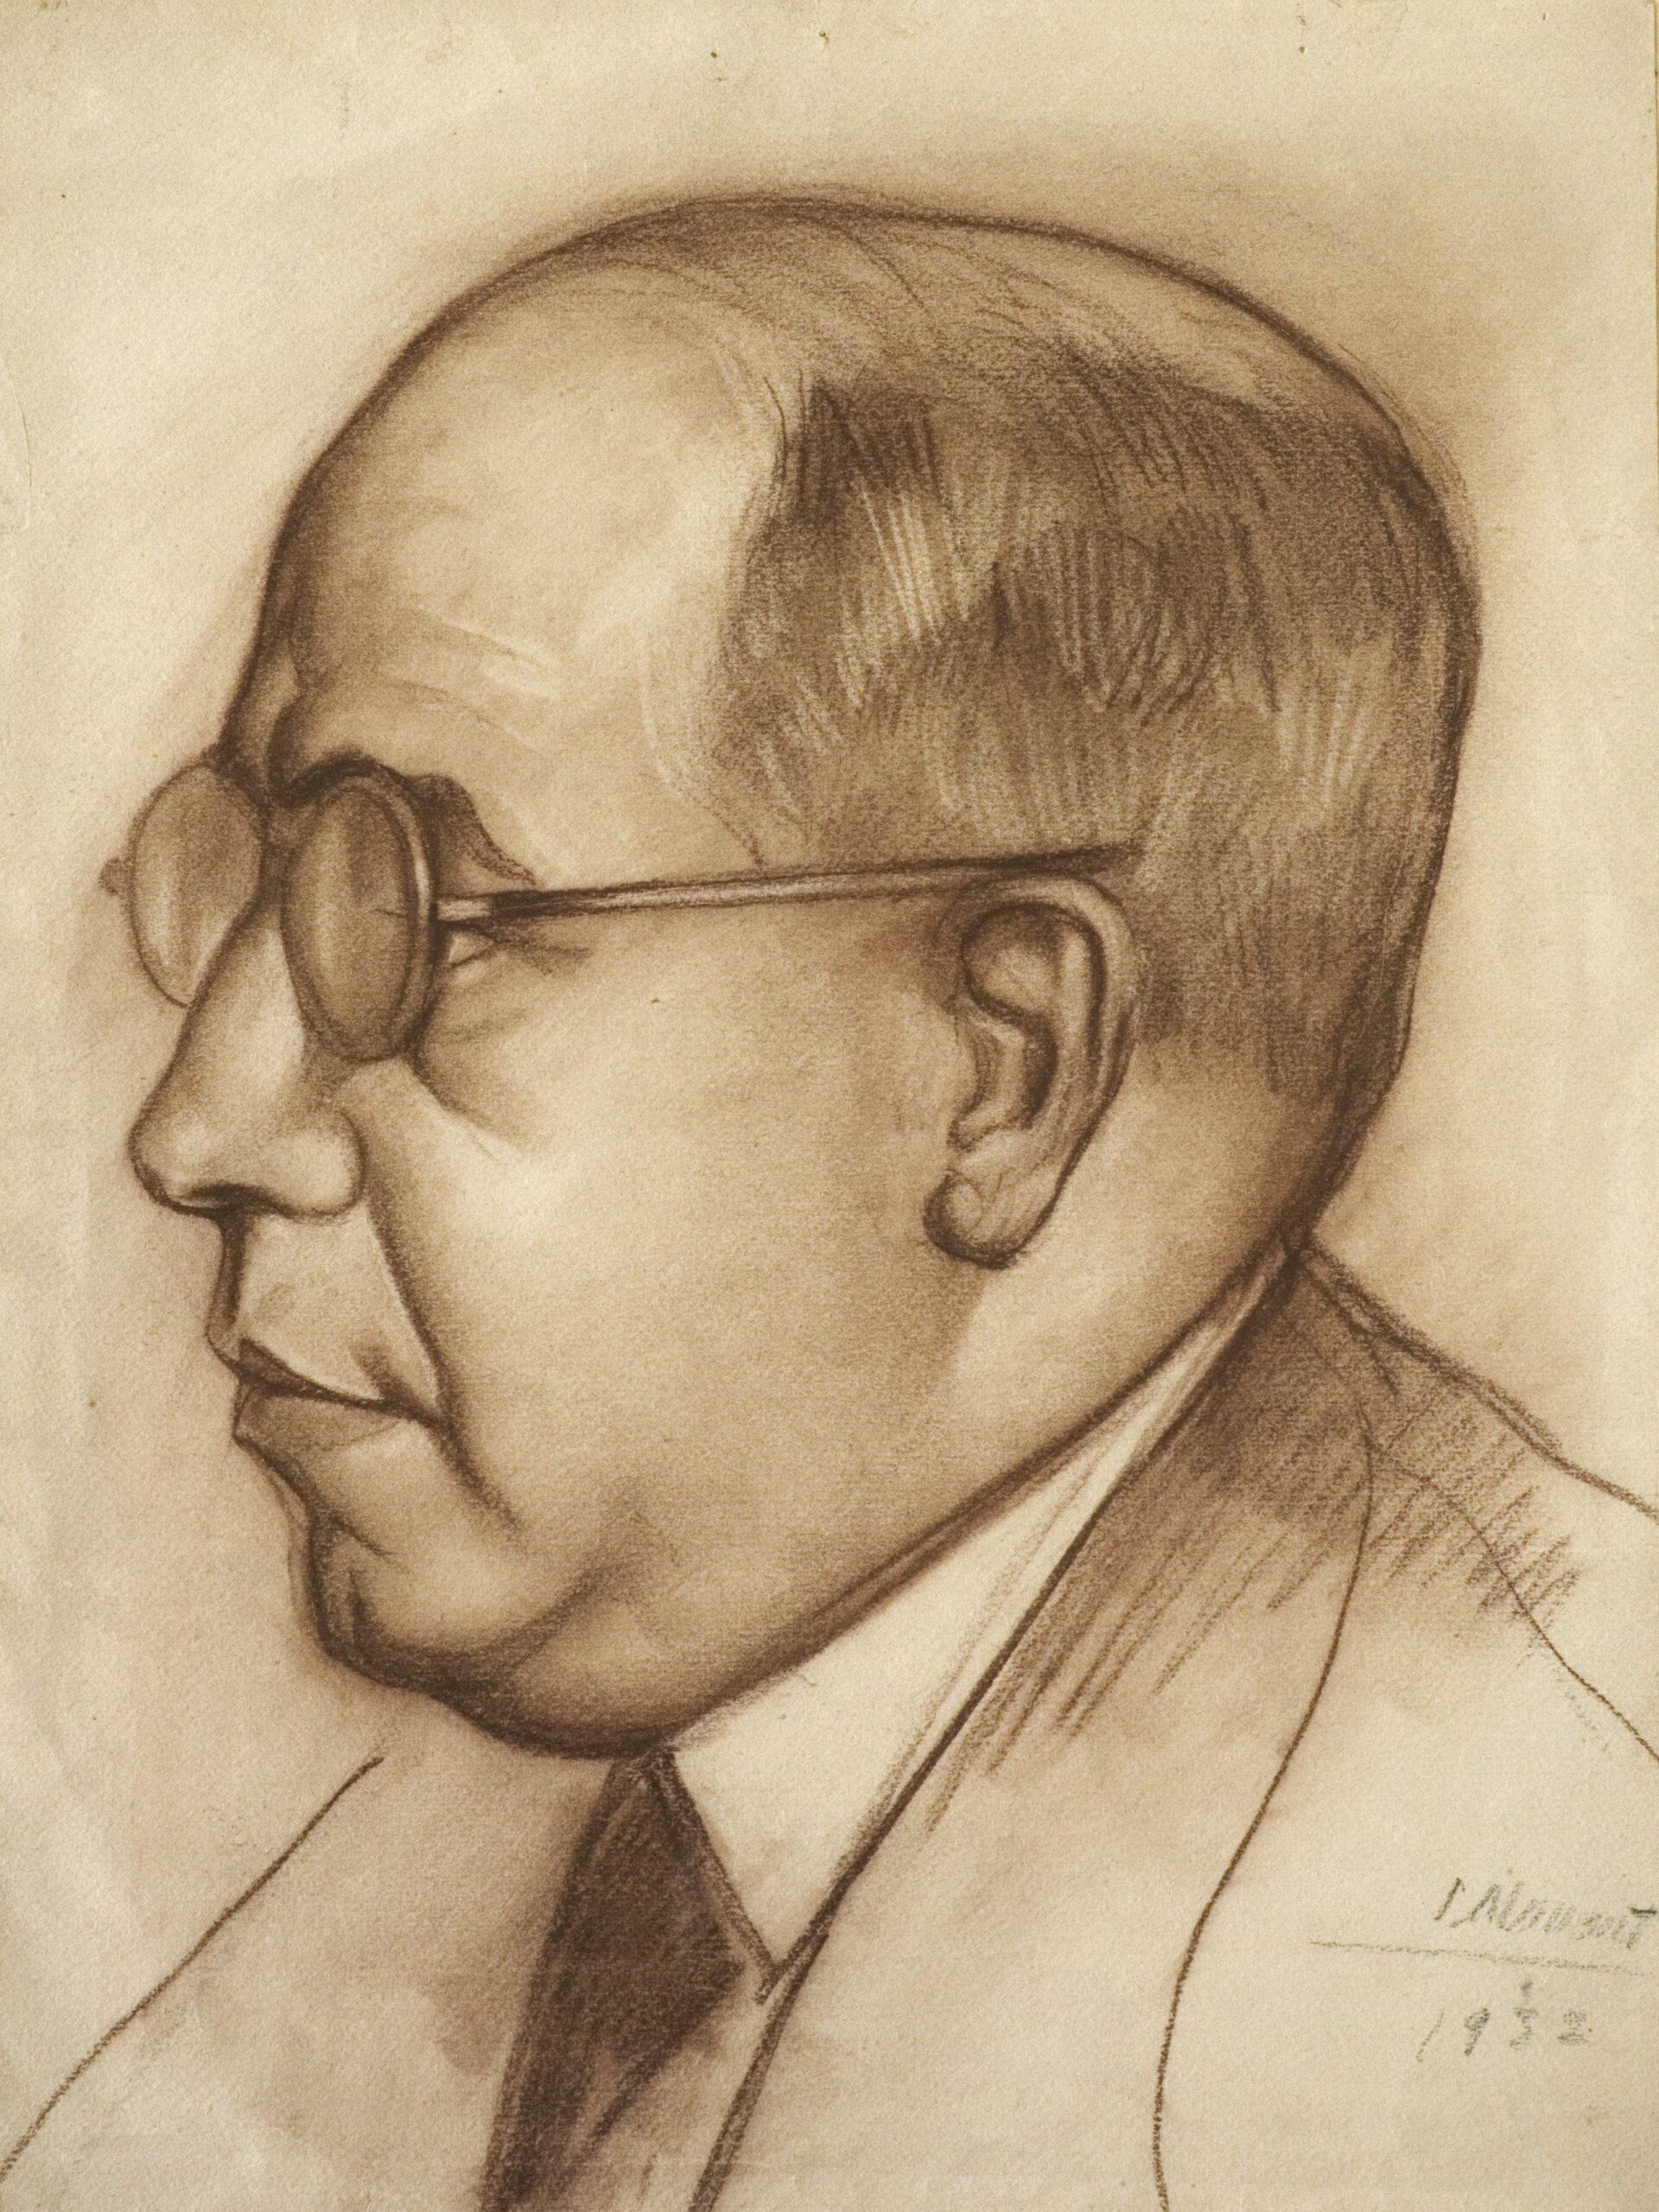 Dibujo de José Manaut titulado Retrato de Manuel Azaña, 1932. Sanguina.